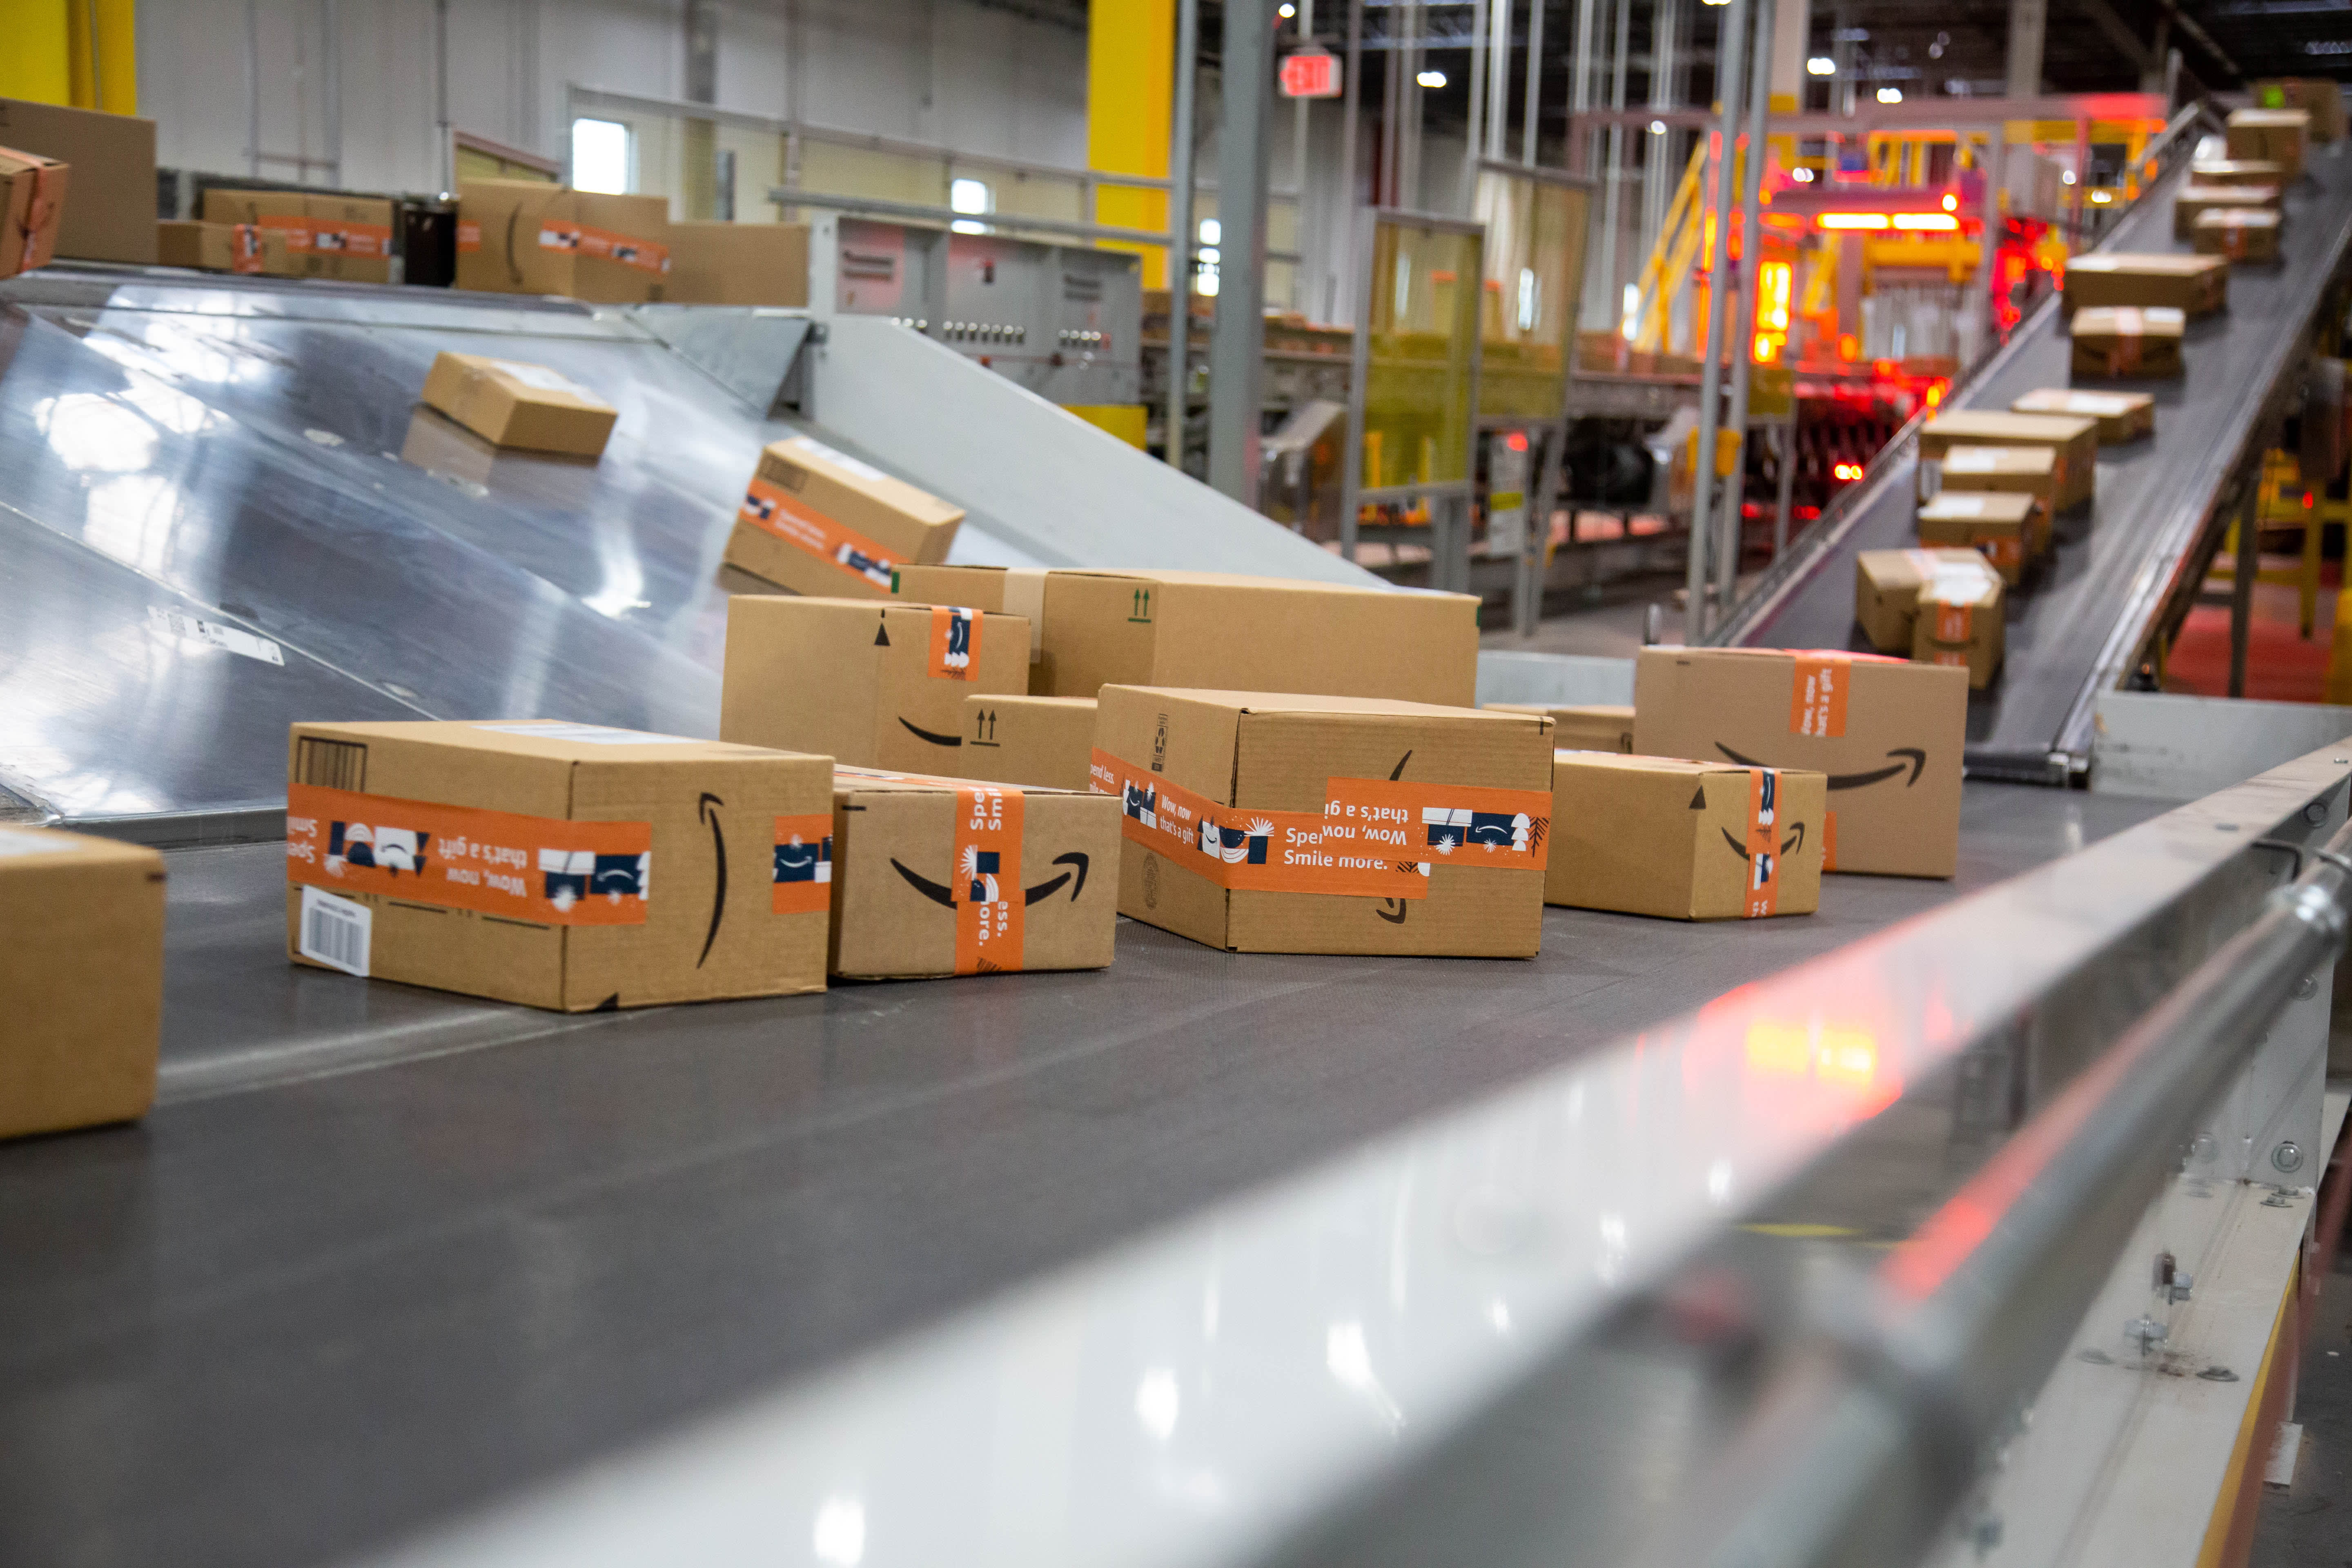 Amazon fined .28 billion by Italy’s antitrust regulators